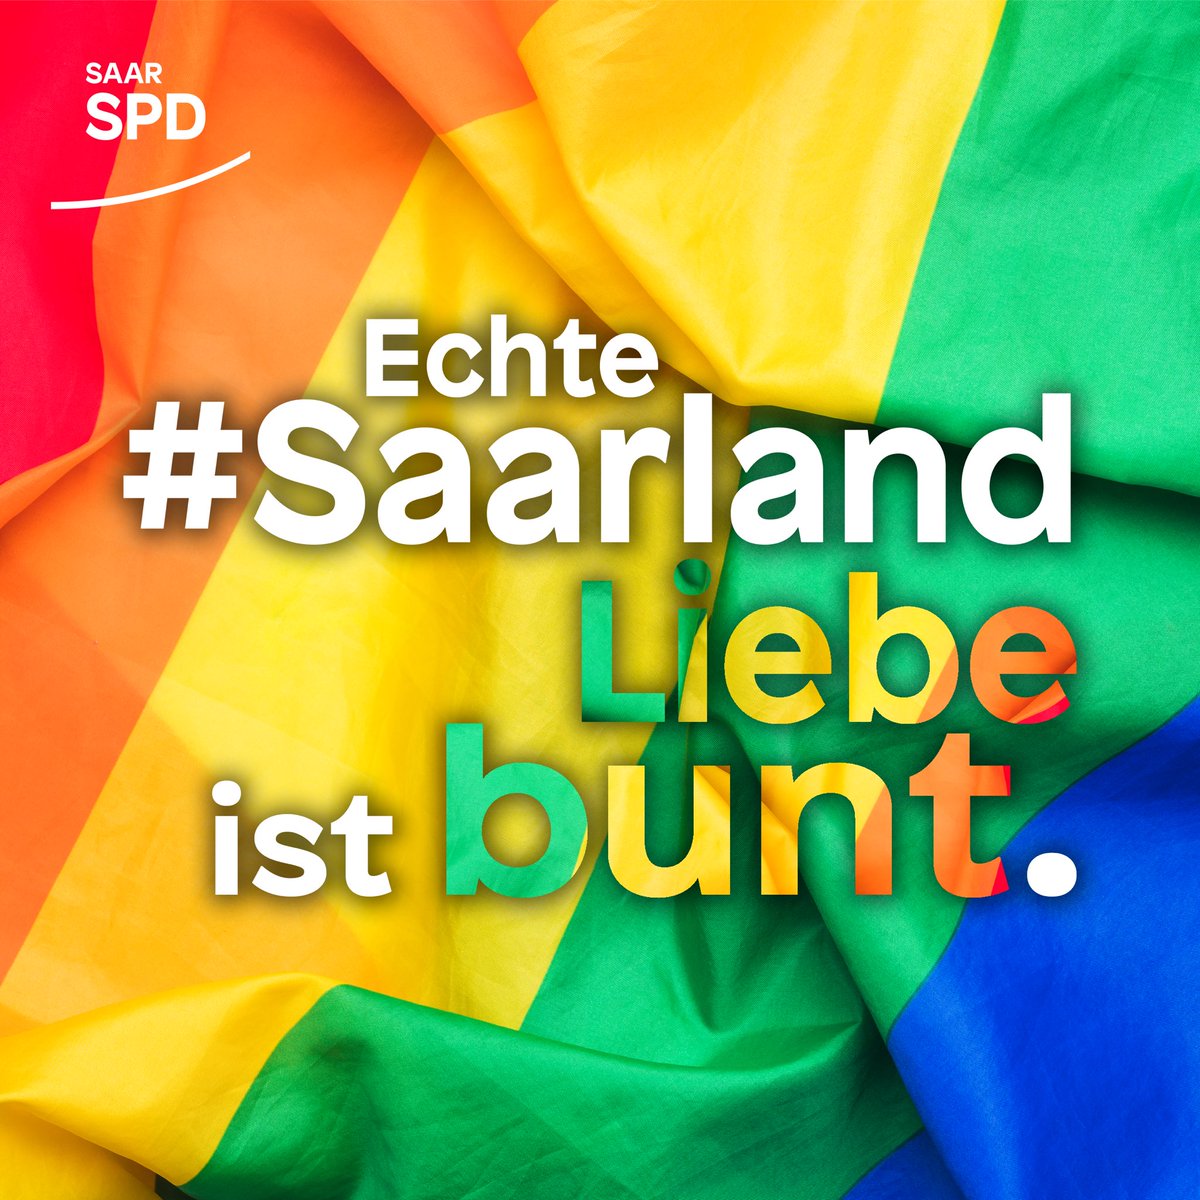 Echte #Saarlandliebe ist bunt! ❤️🧡💛💚💙Deshalb setzen wir uns gegen Diskriminierung und für echte gesellschaftliche Gleichstellung ein. Im Saarland, in Deutschland und weltweit. #IDAHOBIT